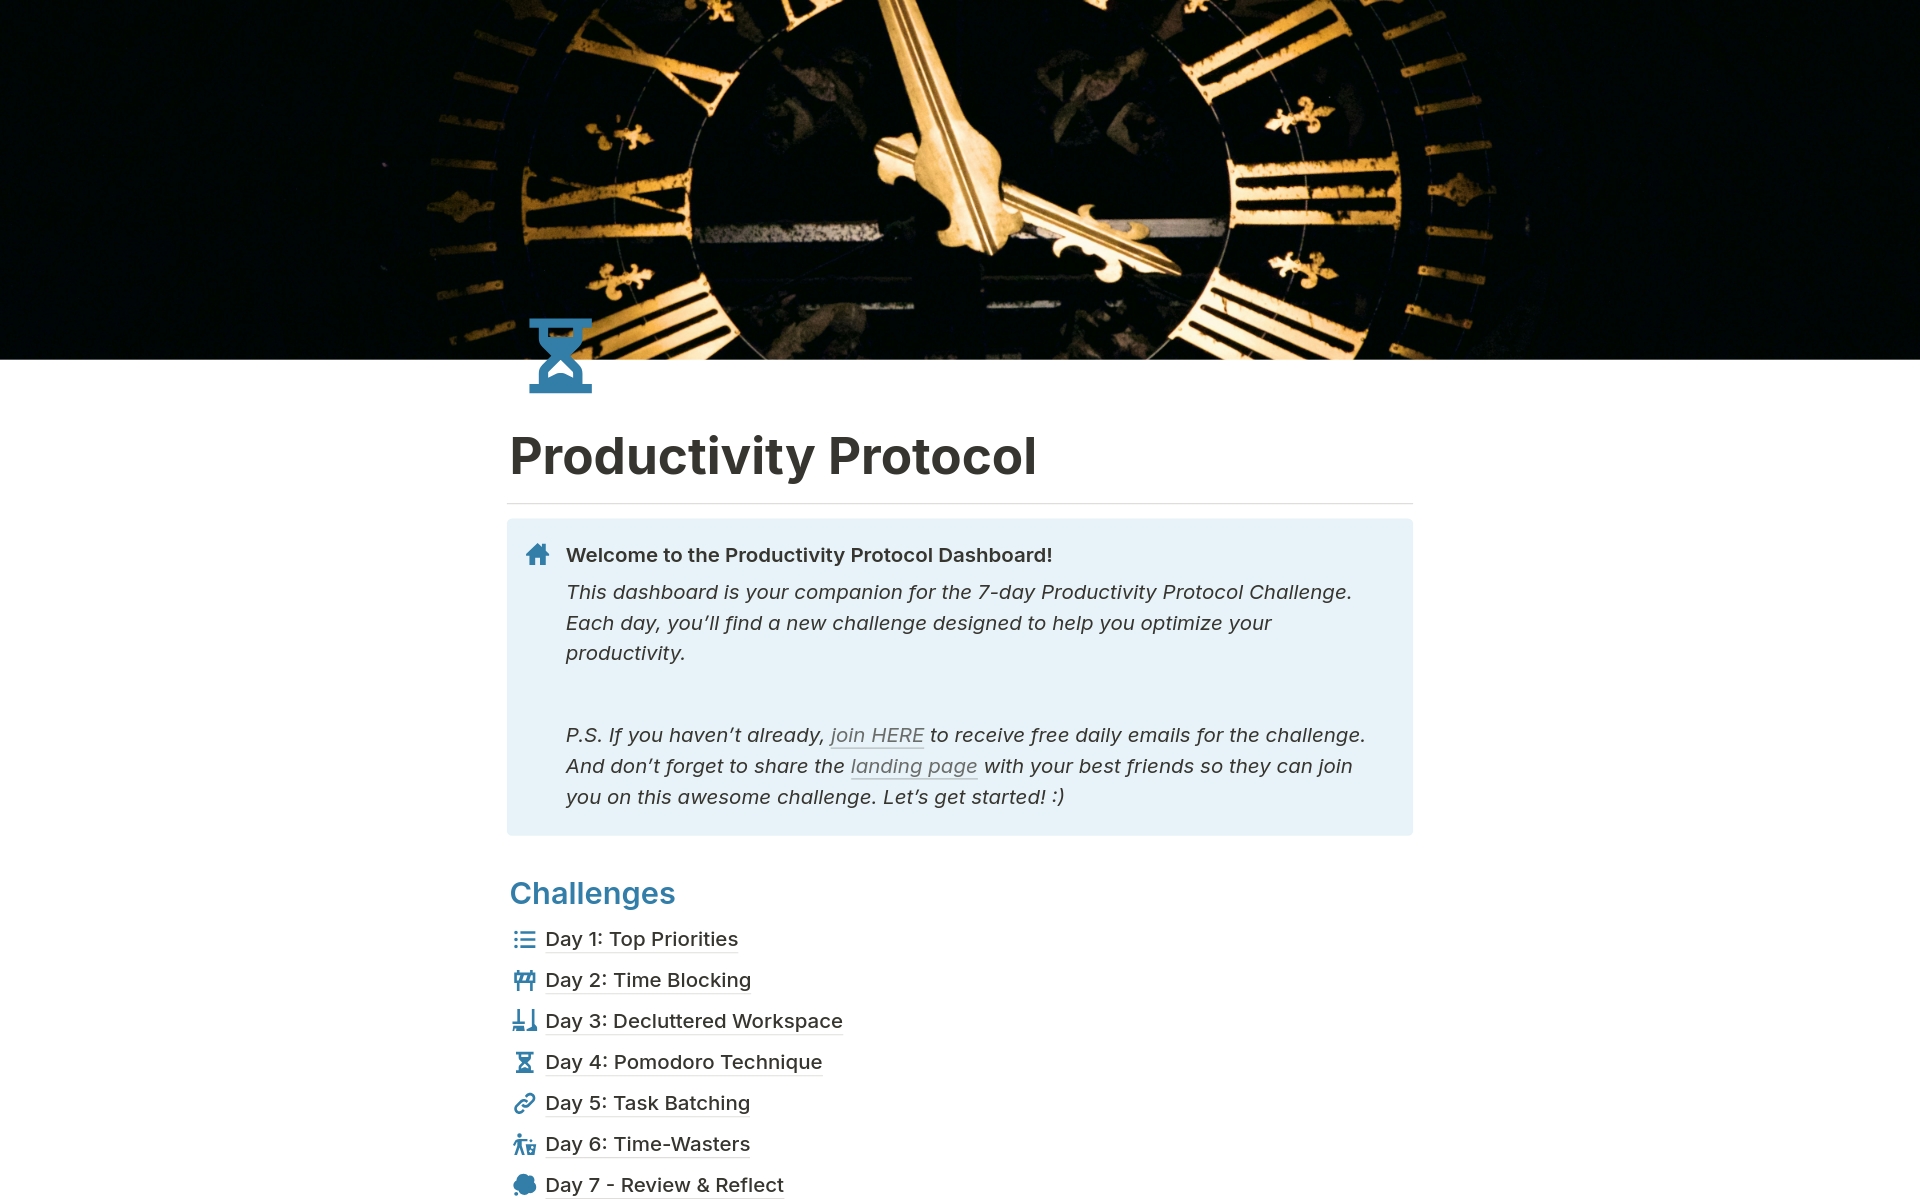 Vista previa de plantilla para 7-Day “Productivity Protocol” Challenge